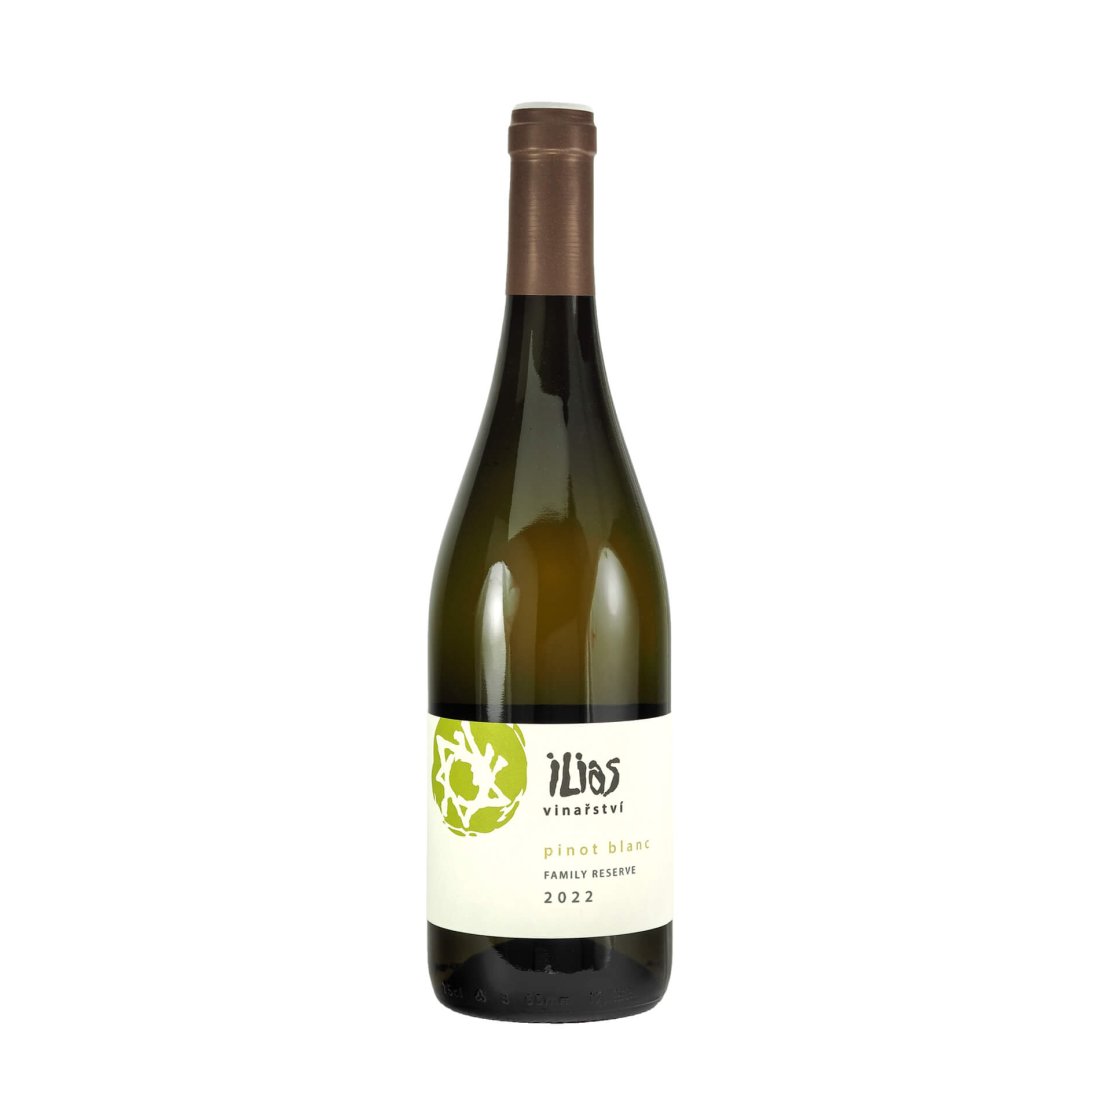 Pinot Blanc SLUNNÝ VRCH 2022 FAMILY RESERVE pozdní sběr VINAŘSTVÍ ILIAS suché š. 1622